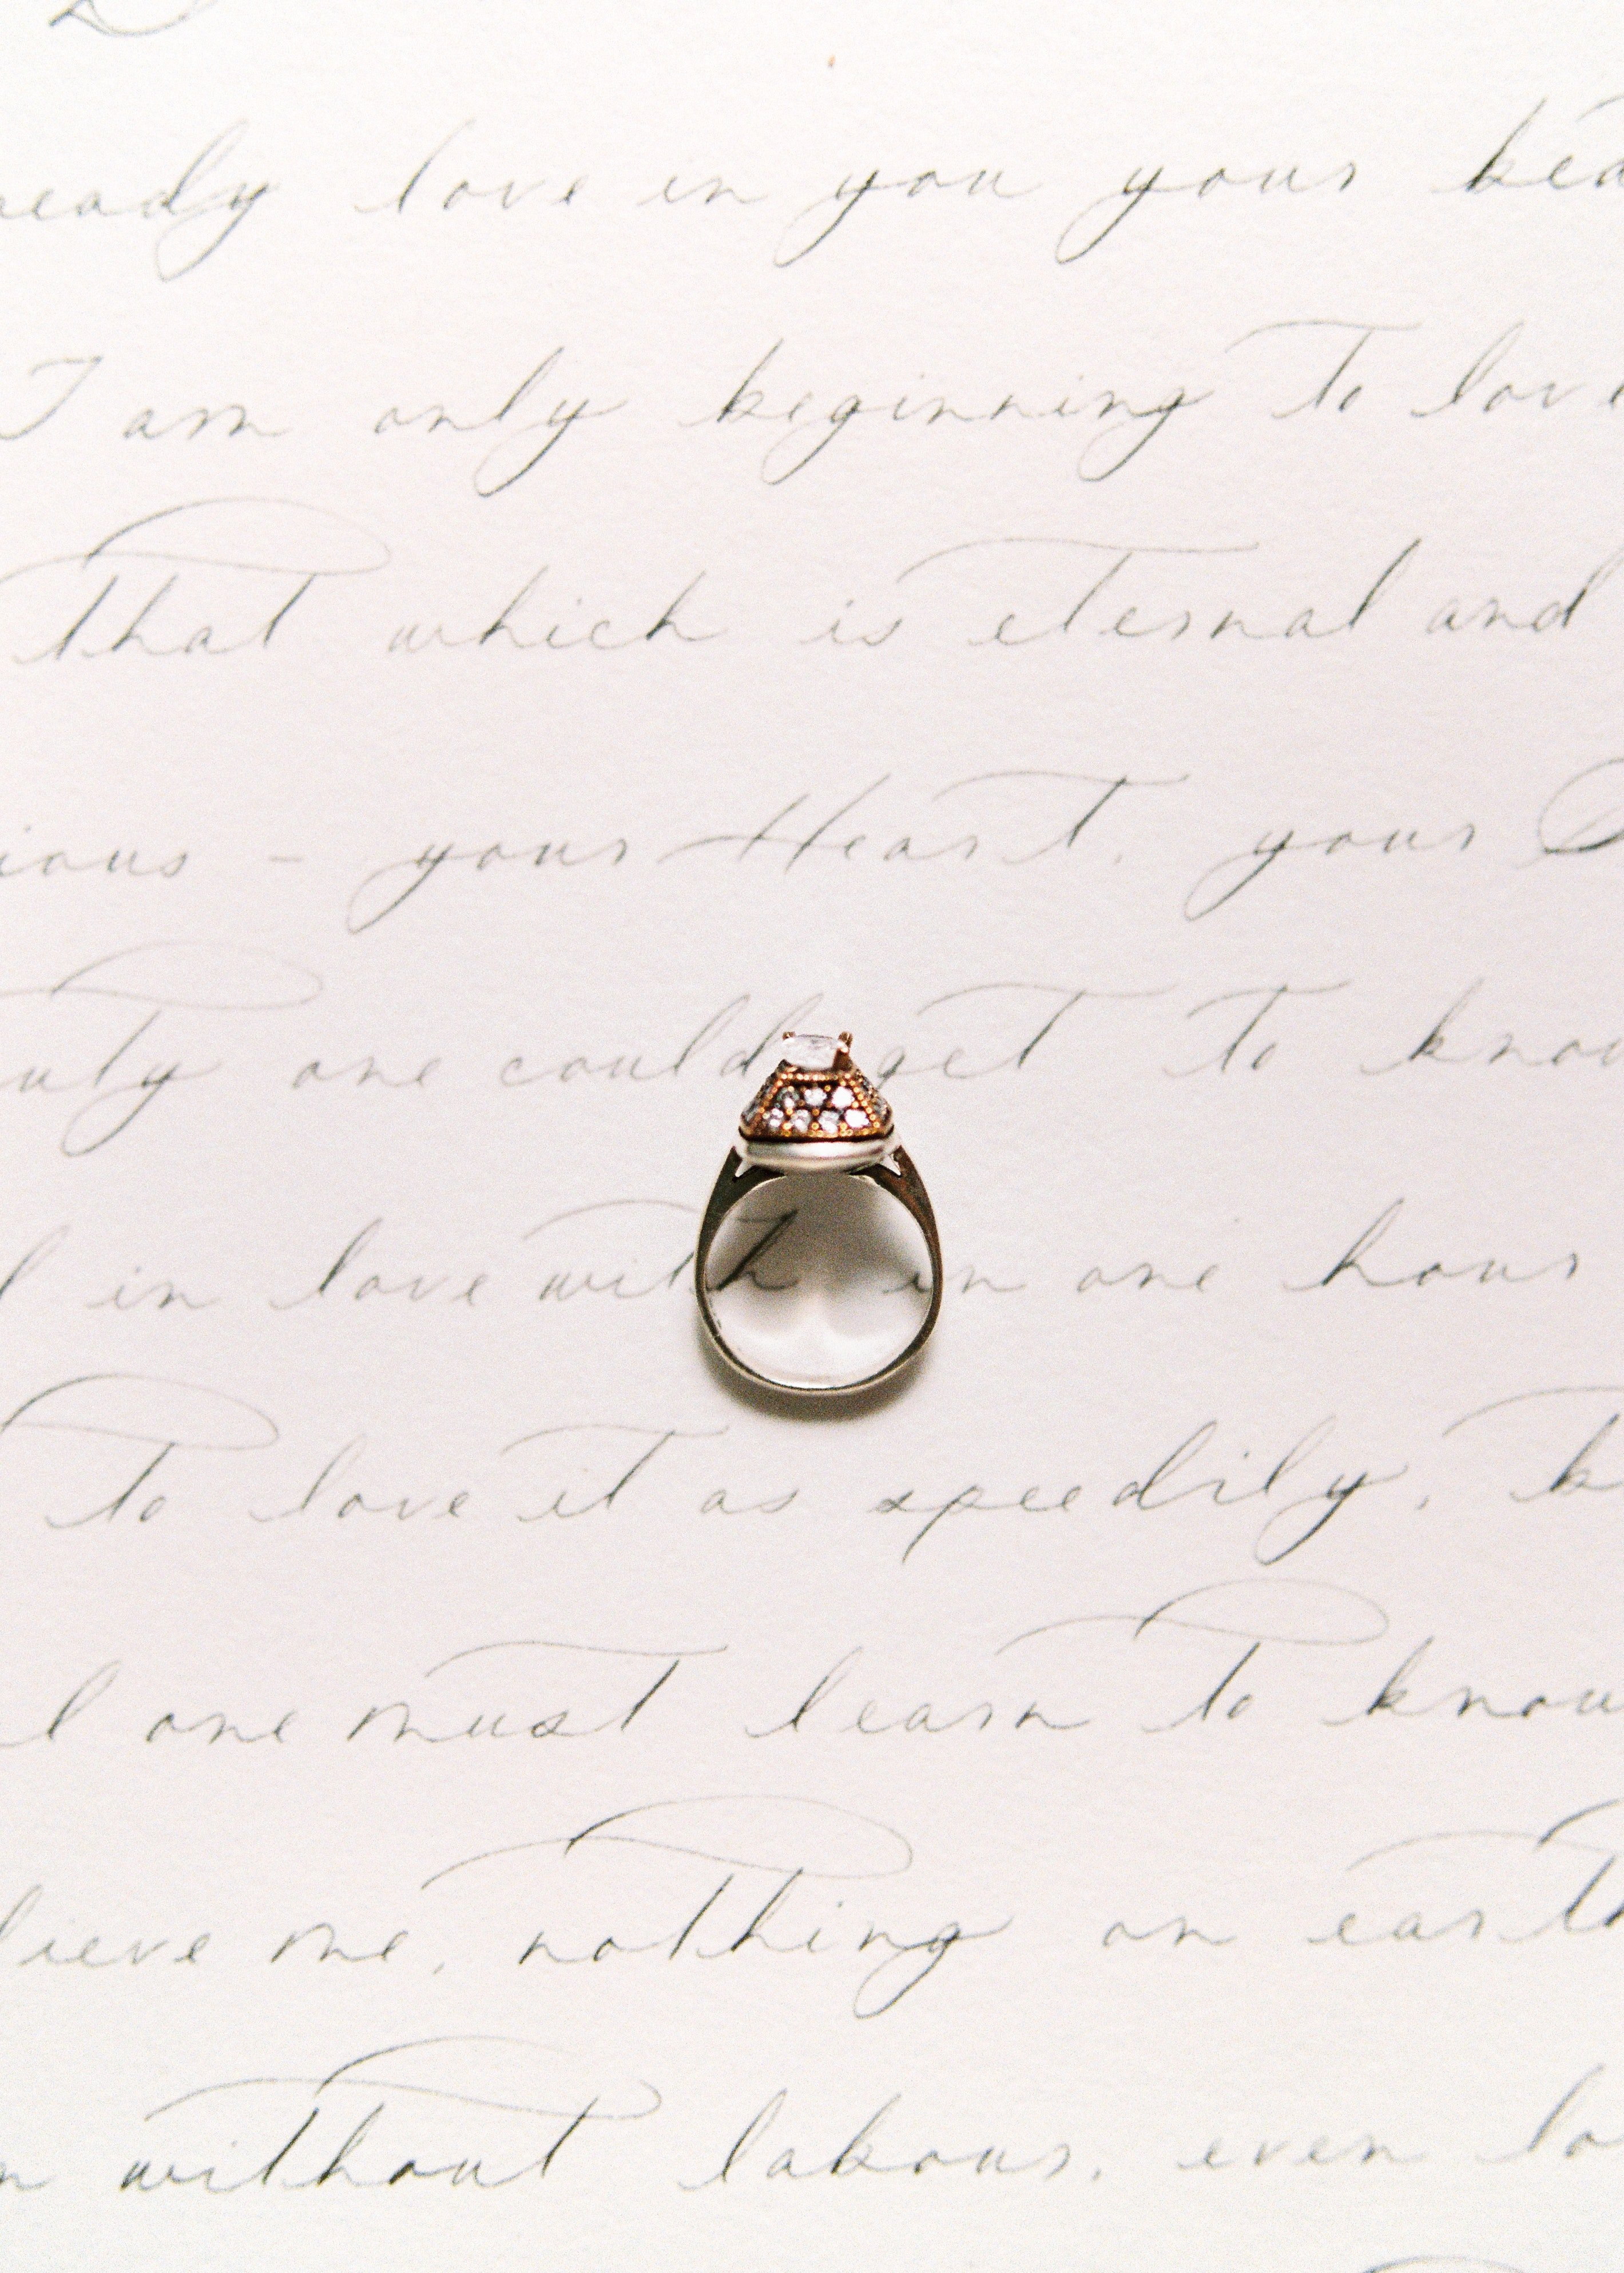 Una nota manuscrita y un anillo. | Foto: Pexels